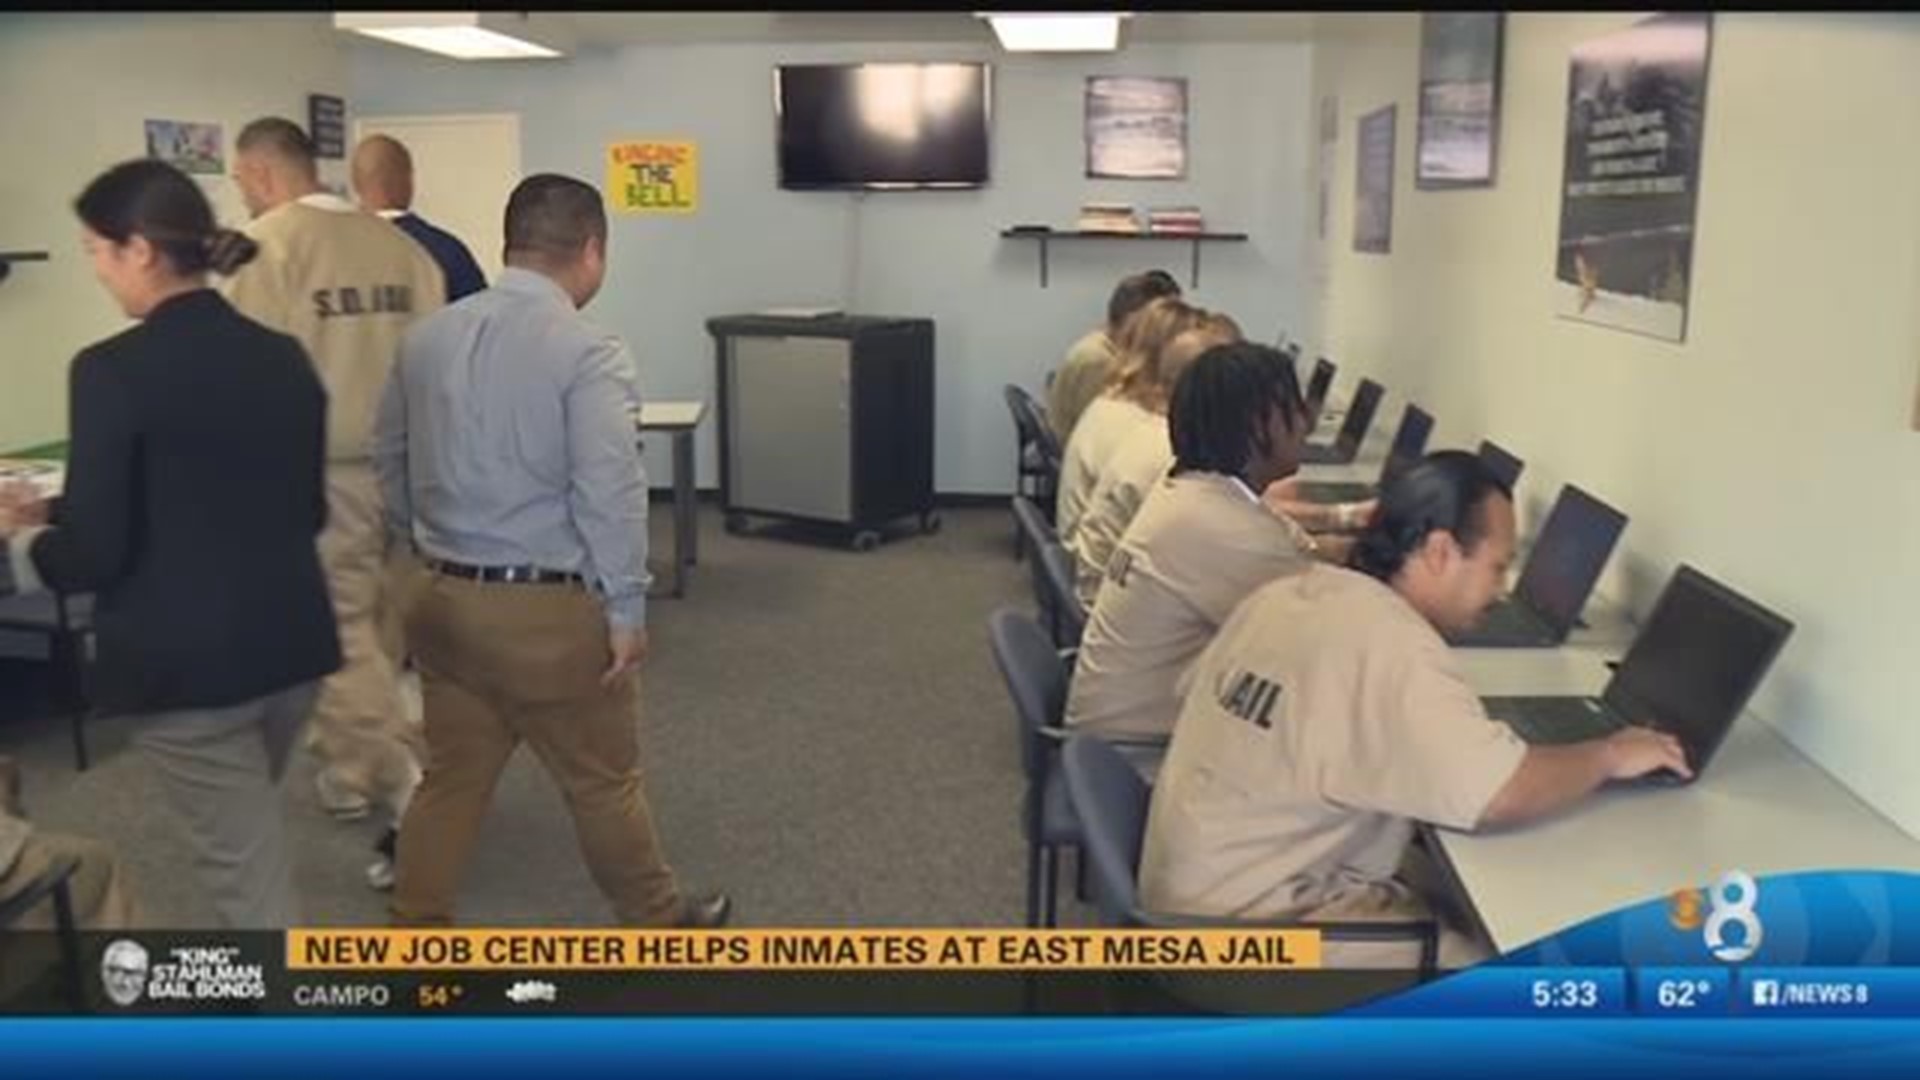 New job center helps inmates at East Mesa Jail